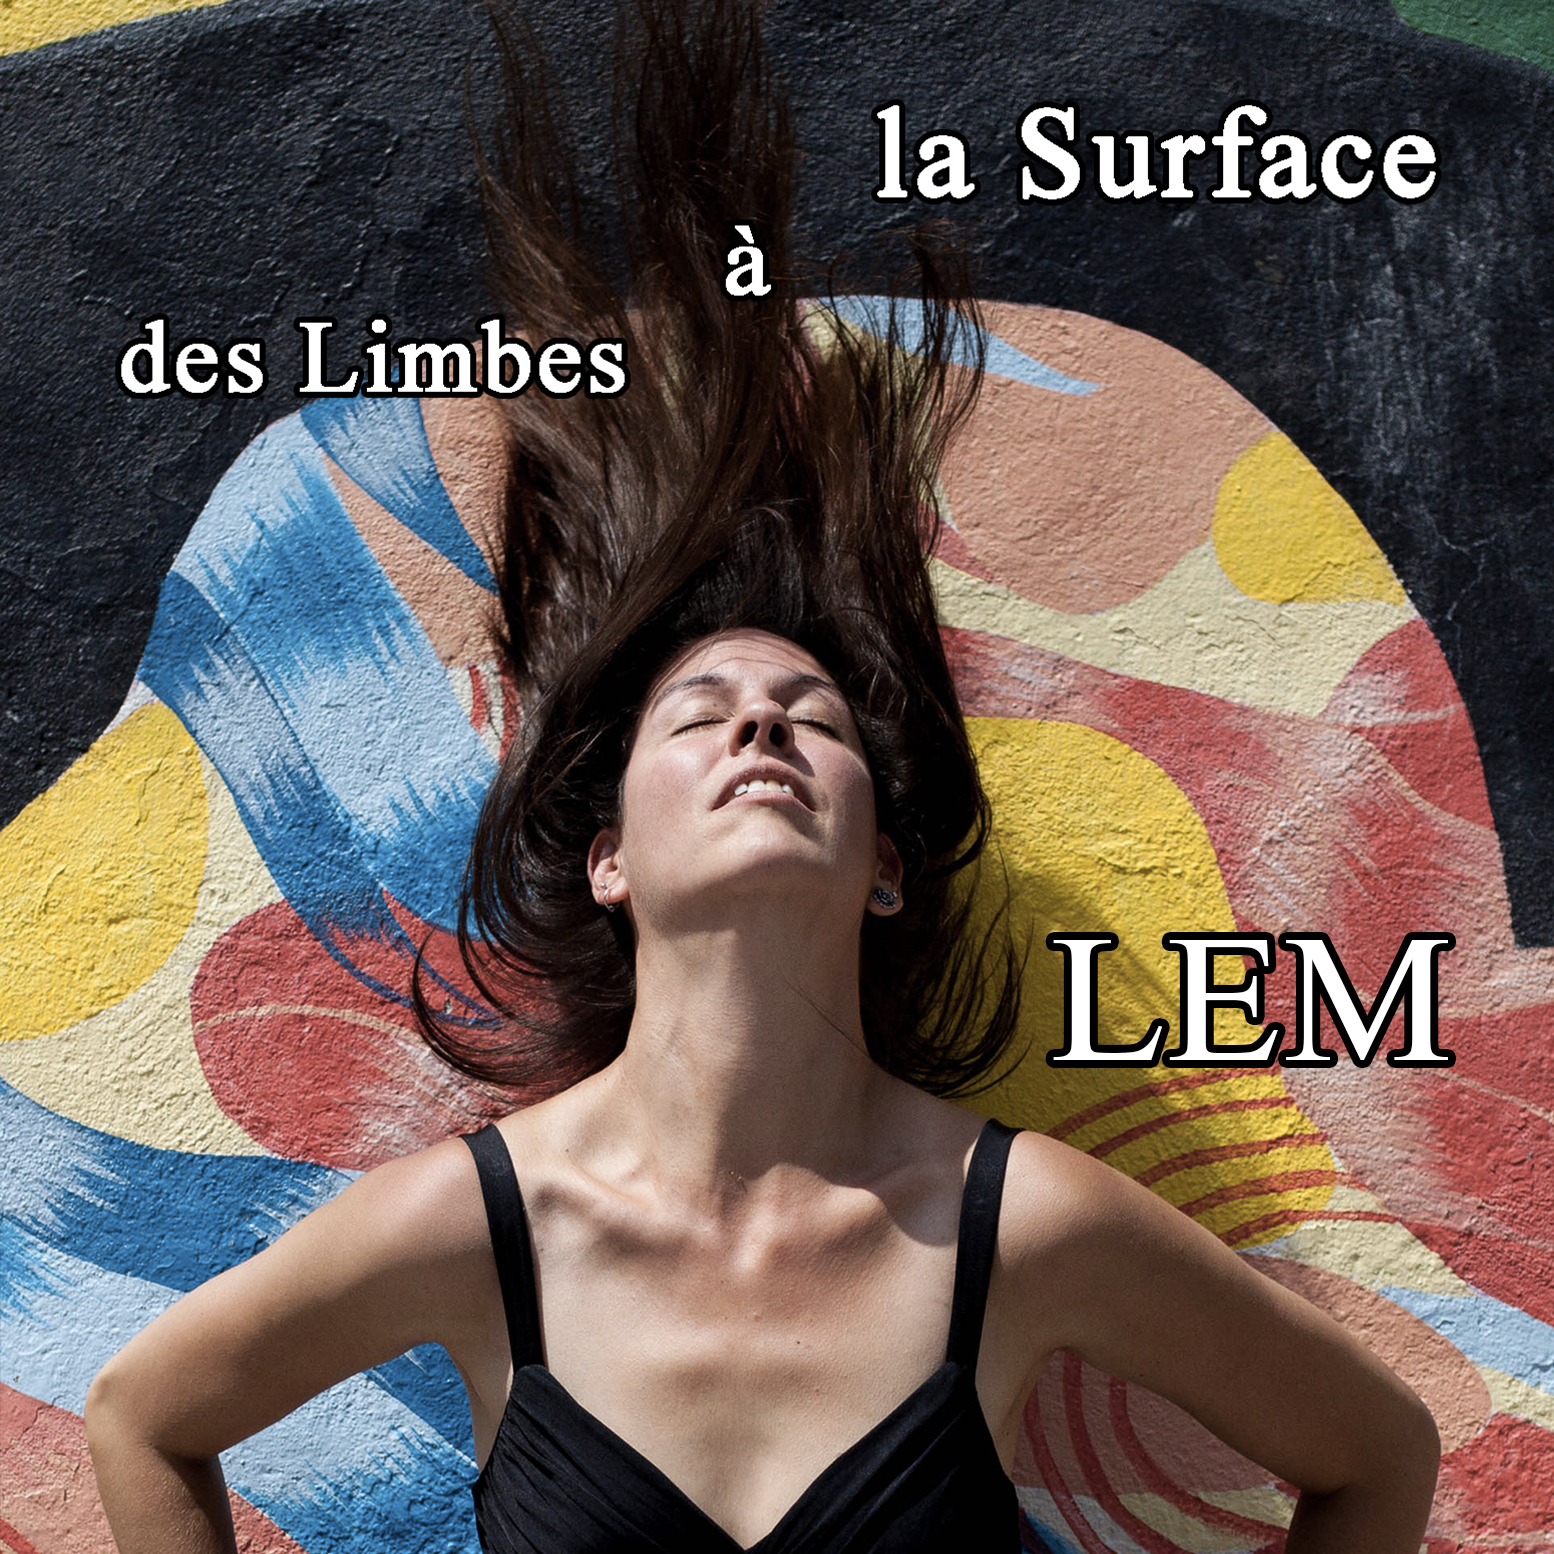 LEM - Des limbes à la surface (un livre et un show!)